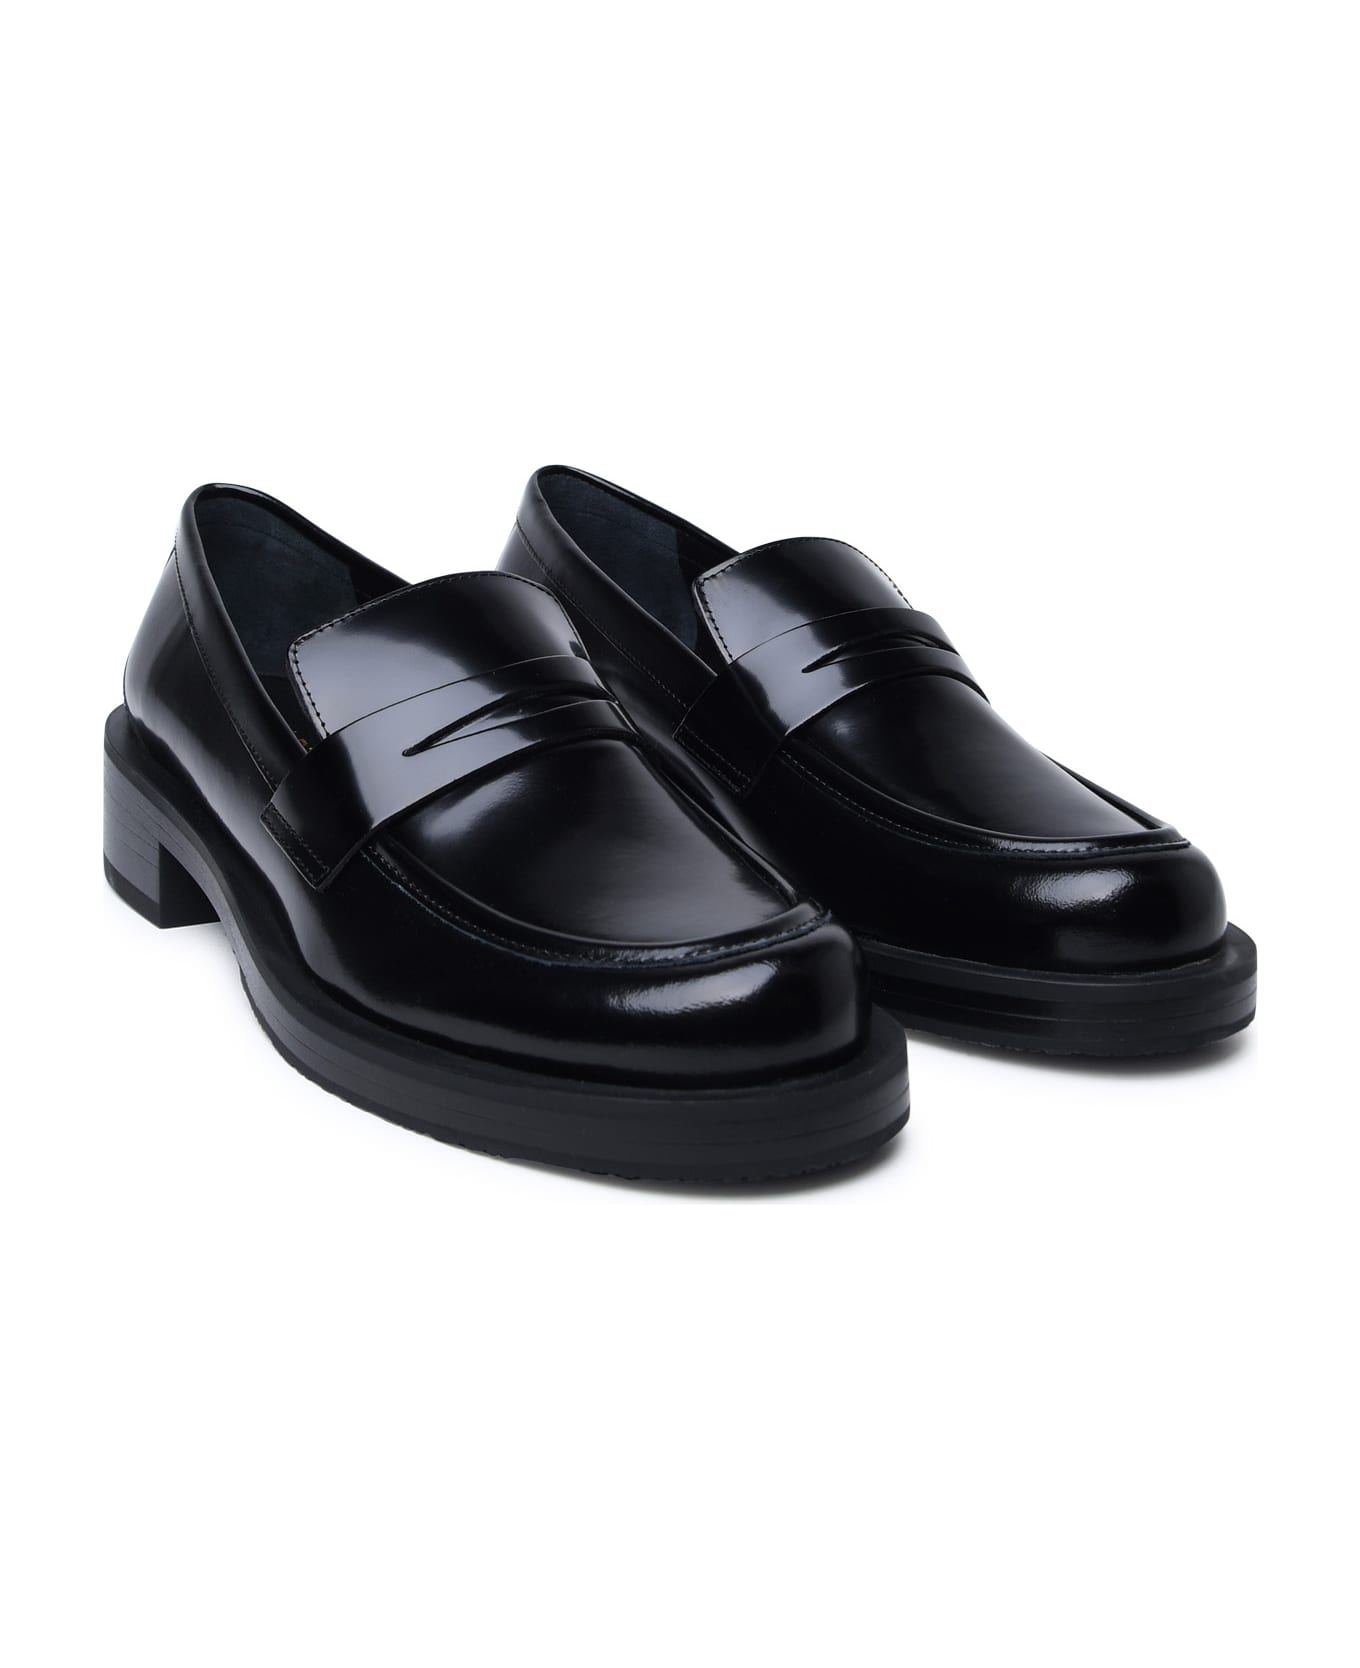 Stuart Weitzman Black Shiny Leather Loafers - Black